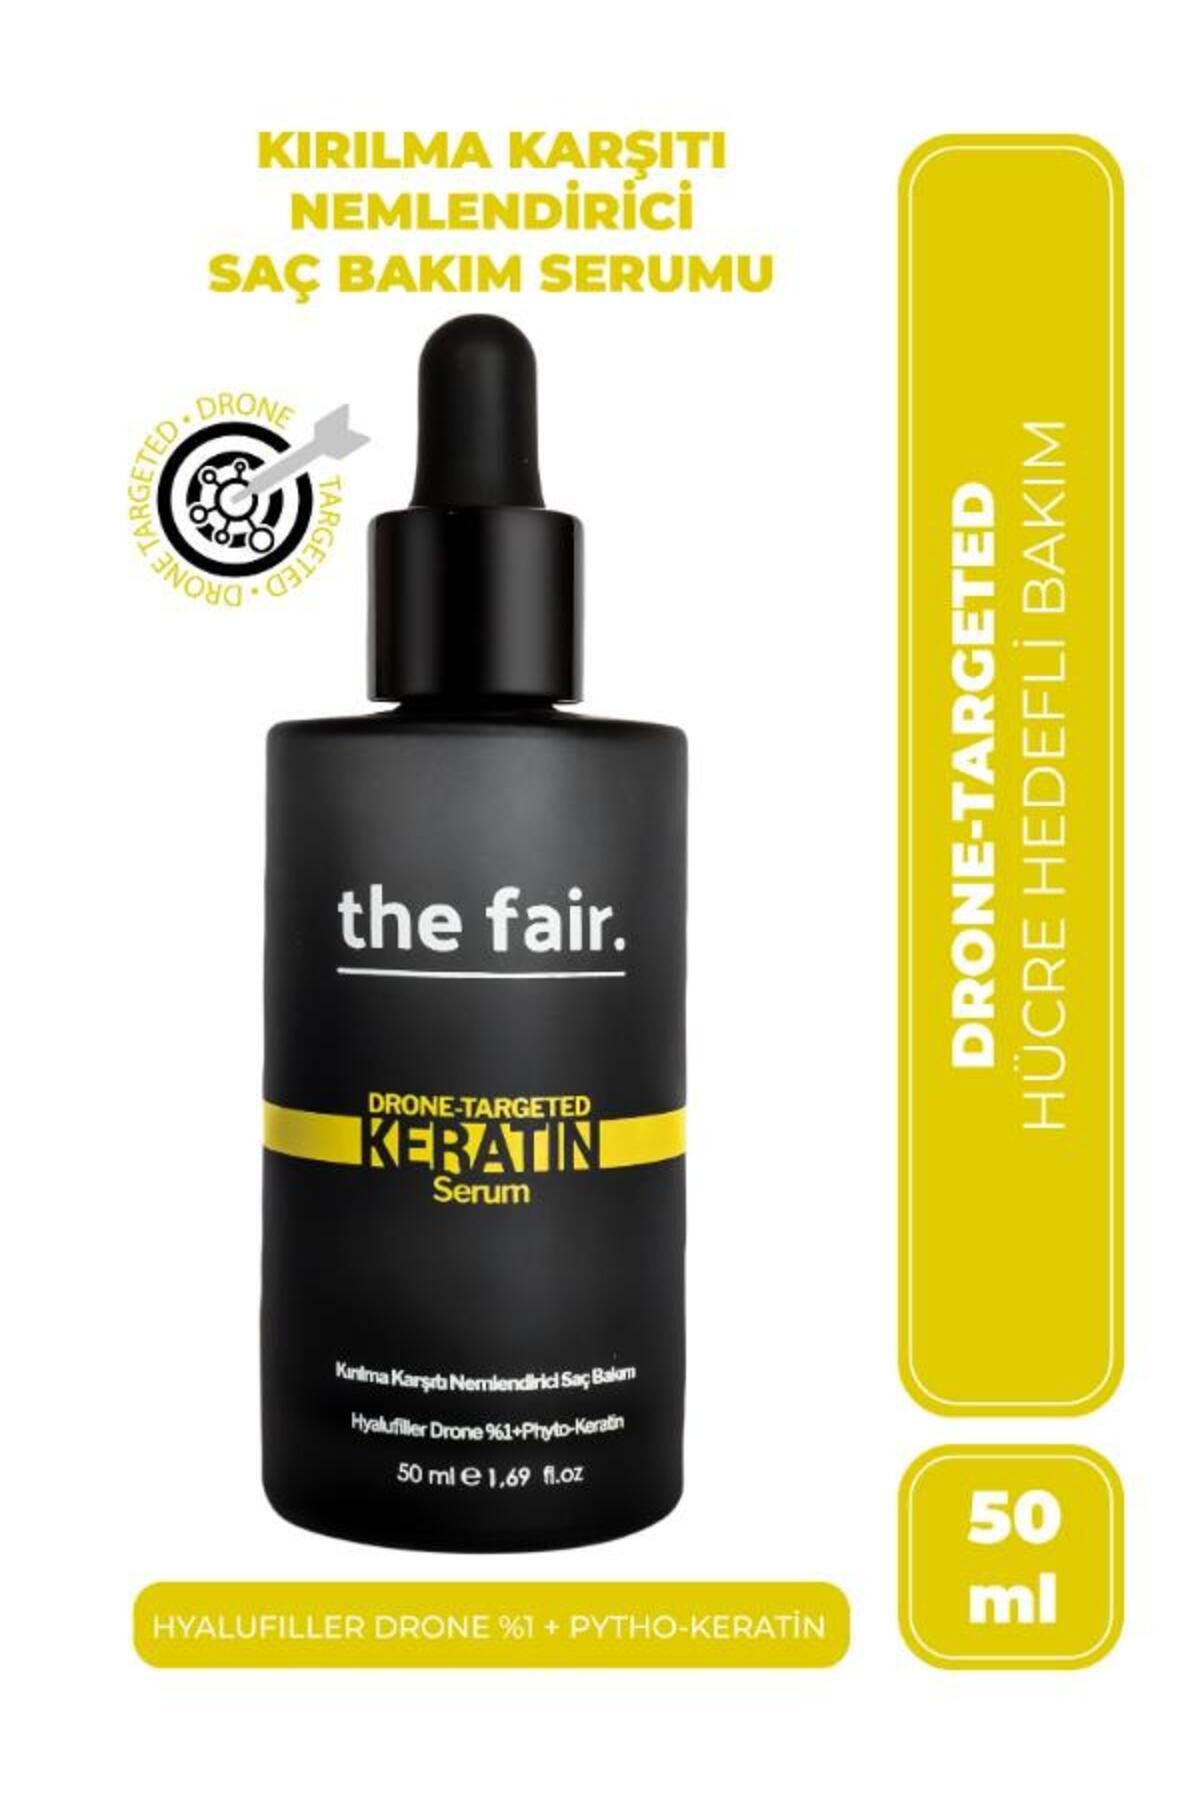 The Fair . Drone-targeted Keratin Kırılma Karşıtı Vegan Saç Serum %1 Hyalufiller Drone Keratin 50 ml